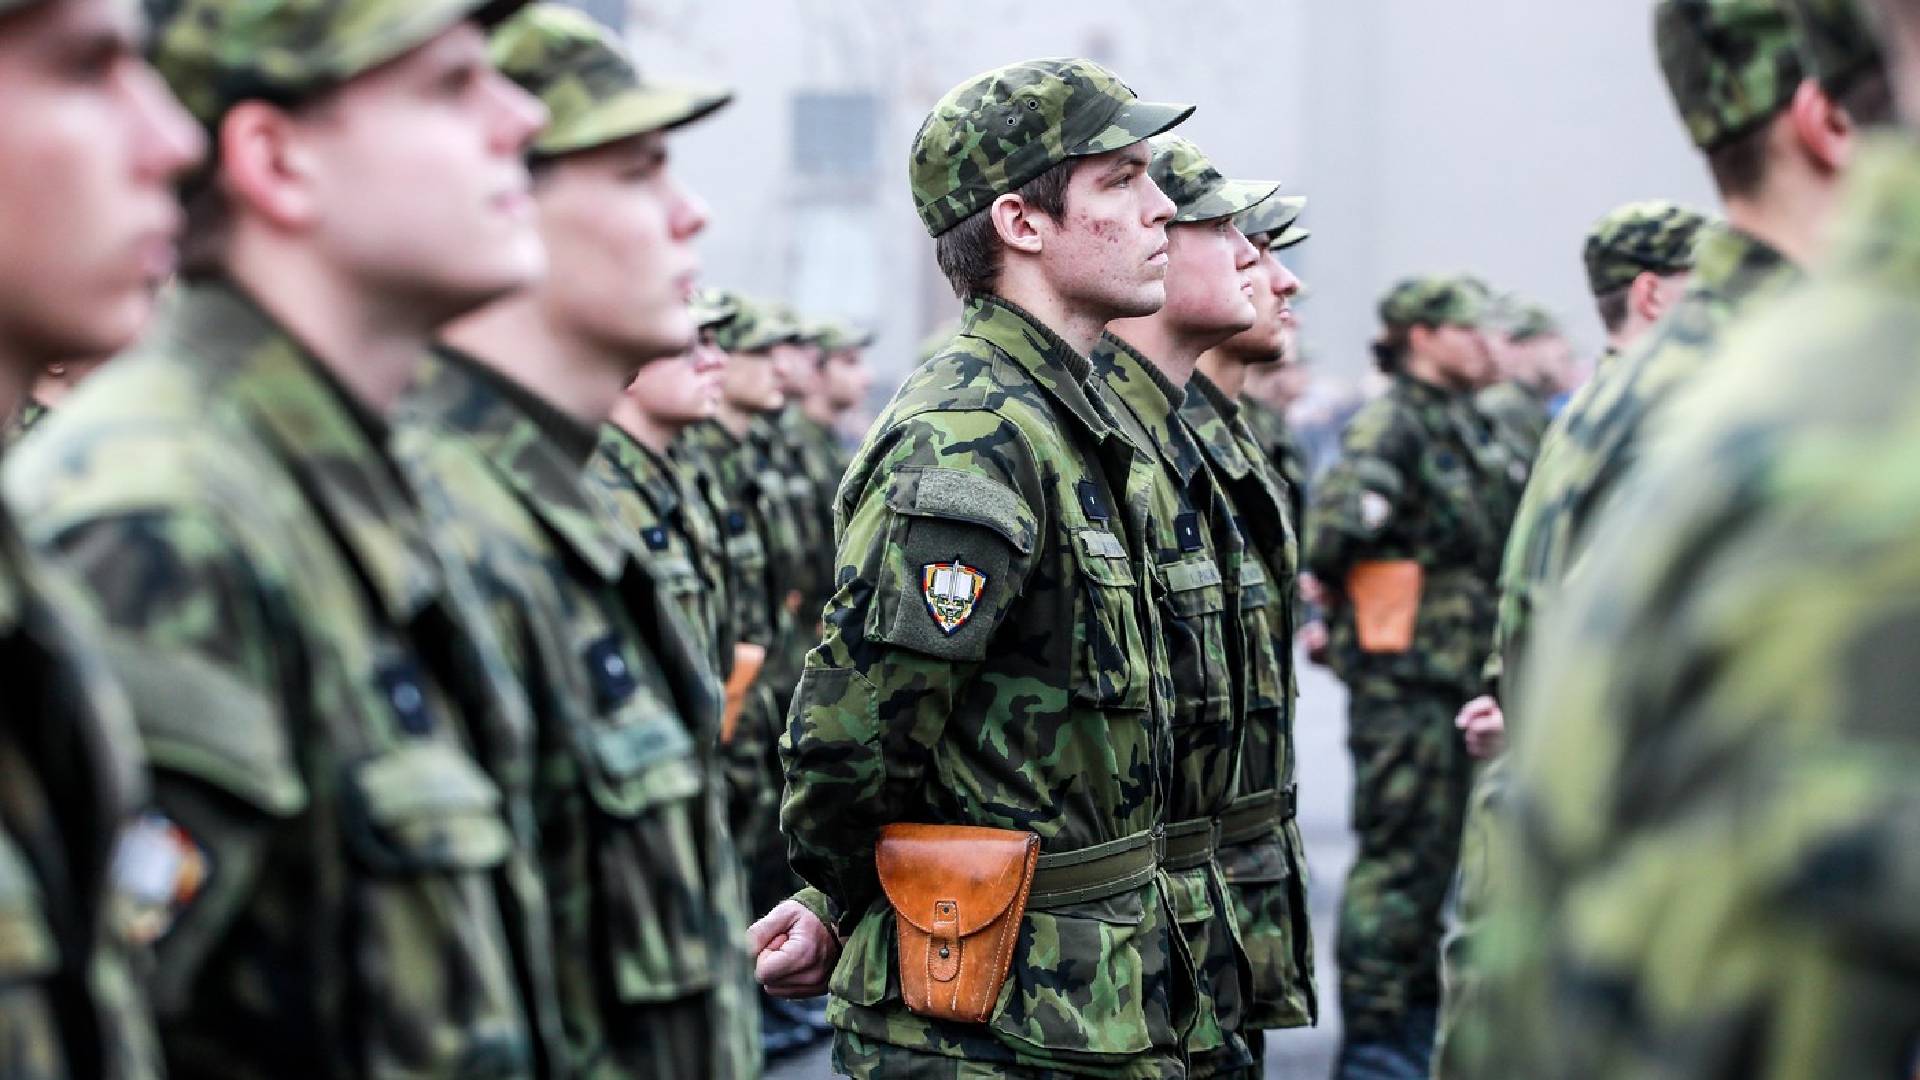 Jednou z možností, jak se dostat do armády, je studovat brněnskou Univerzitu obrany